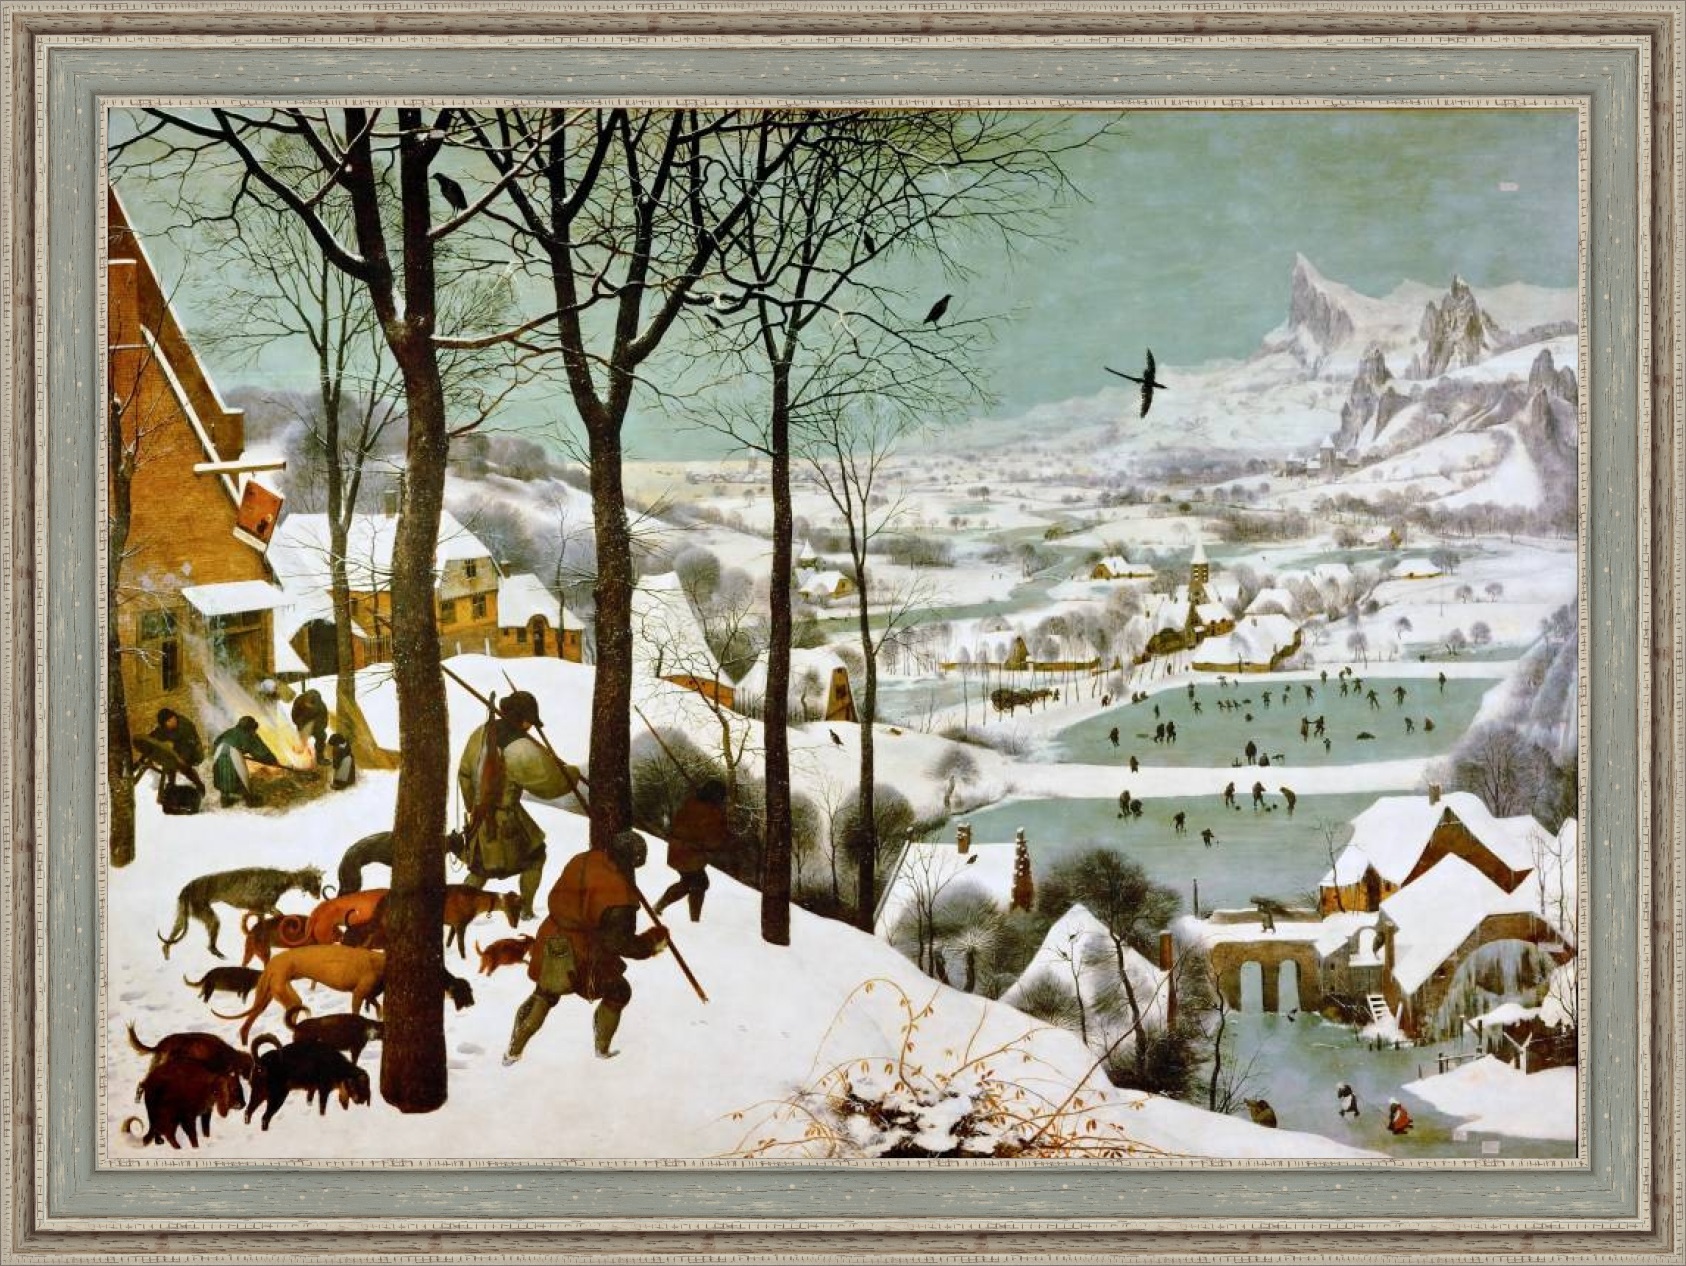 Репродукция картины Питера Брейгеля 'Охотники на снегу' в раме. Вариант 1.